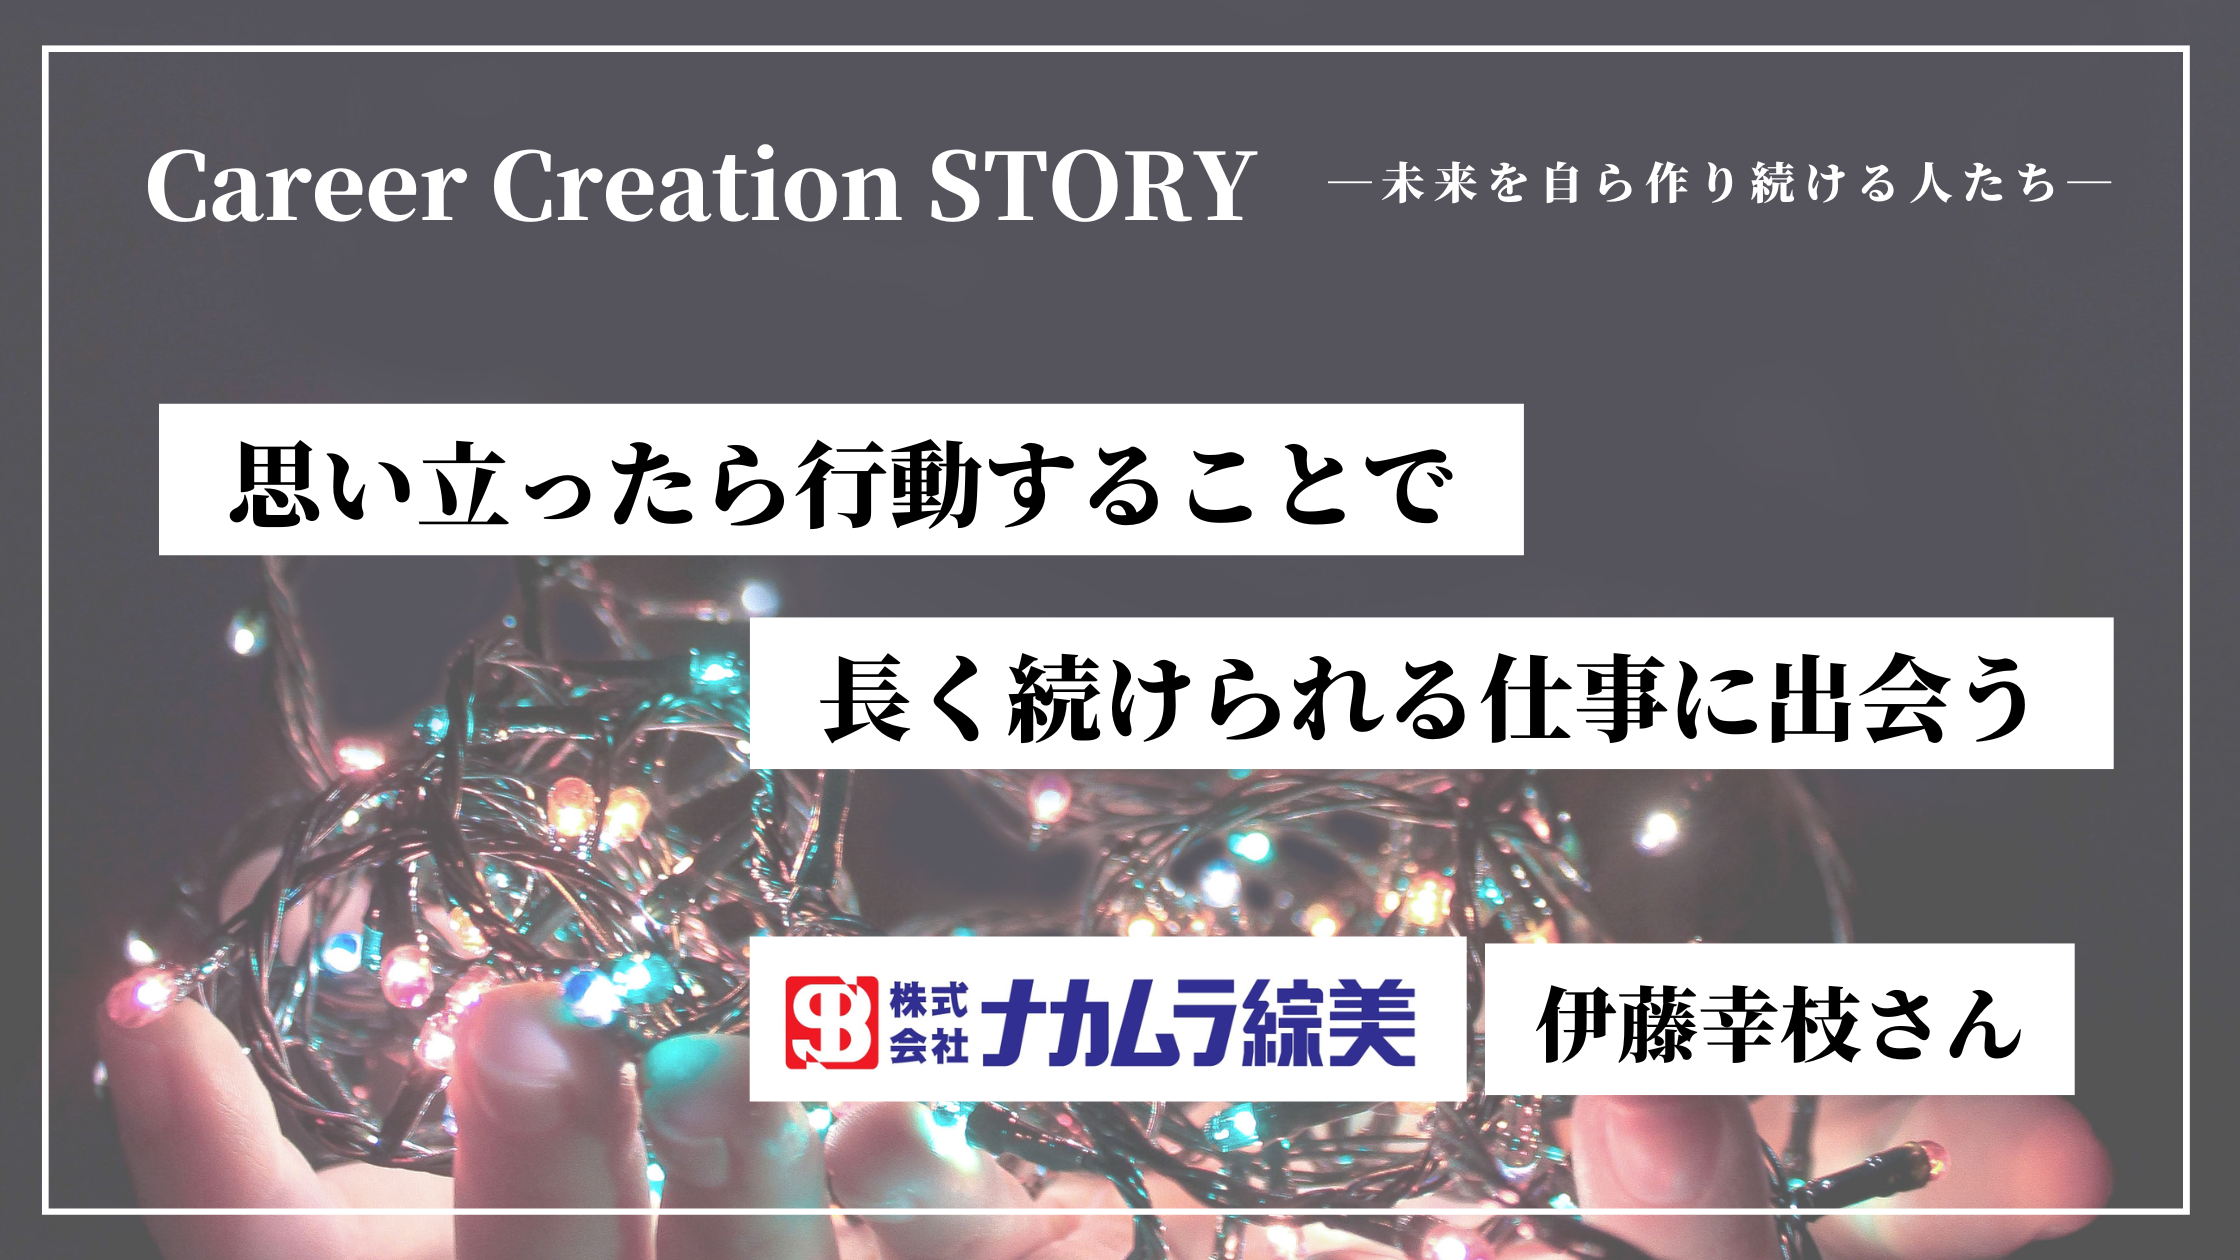 Career Creation STORY #14：CCCミュージックラボ（株）後藤渉さん